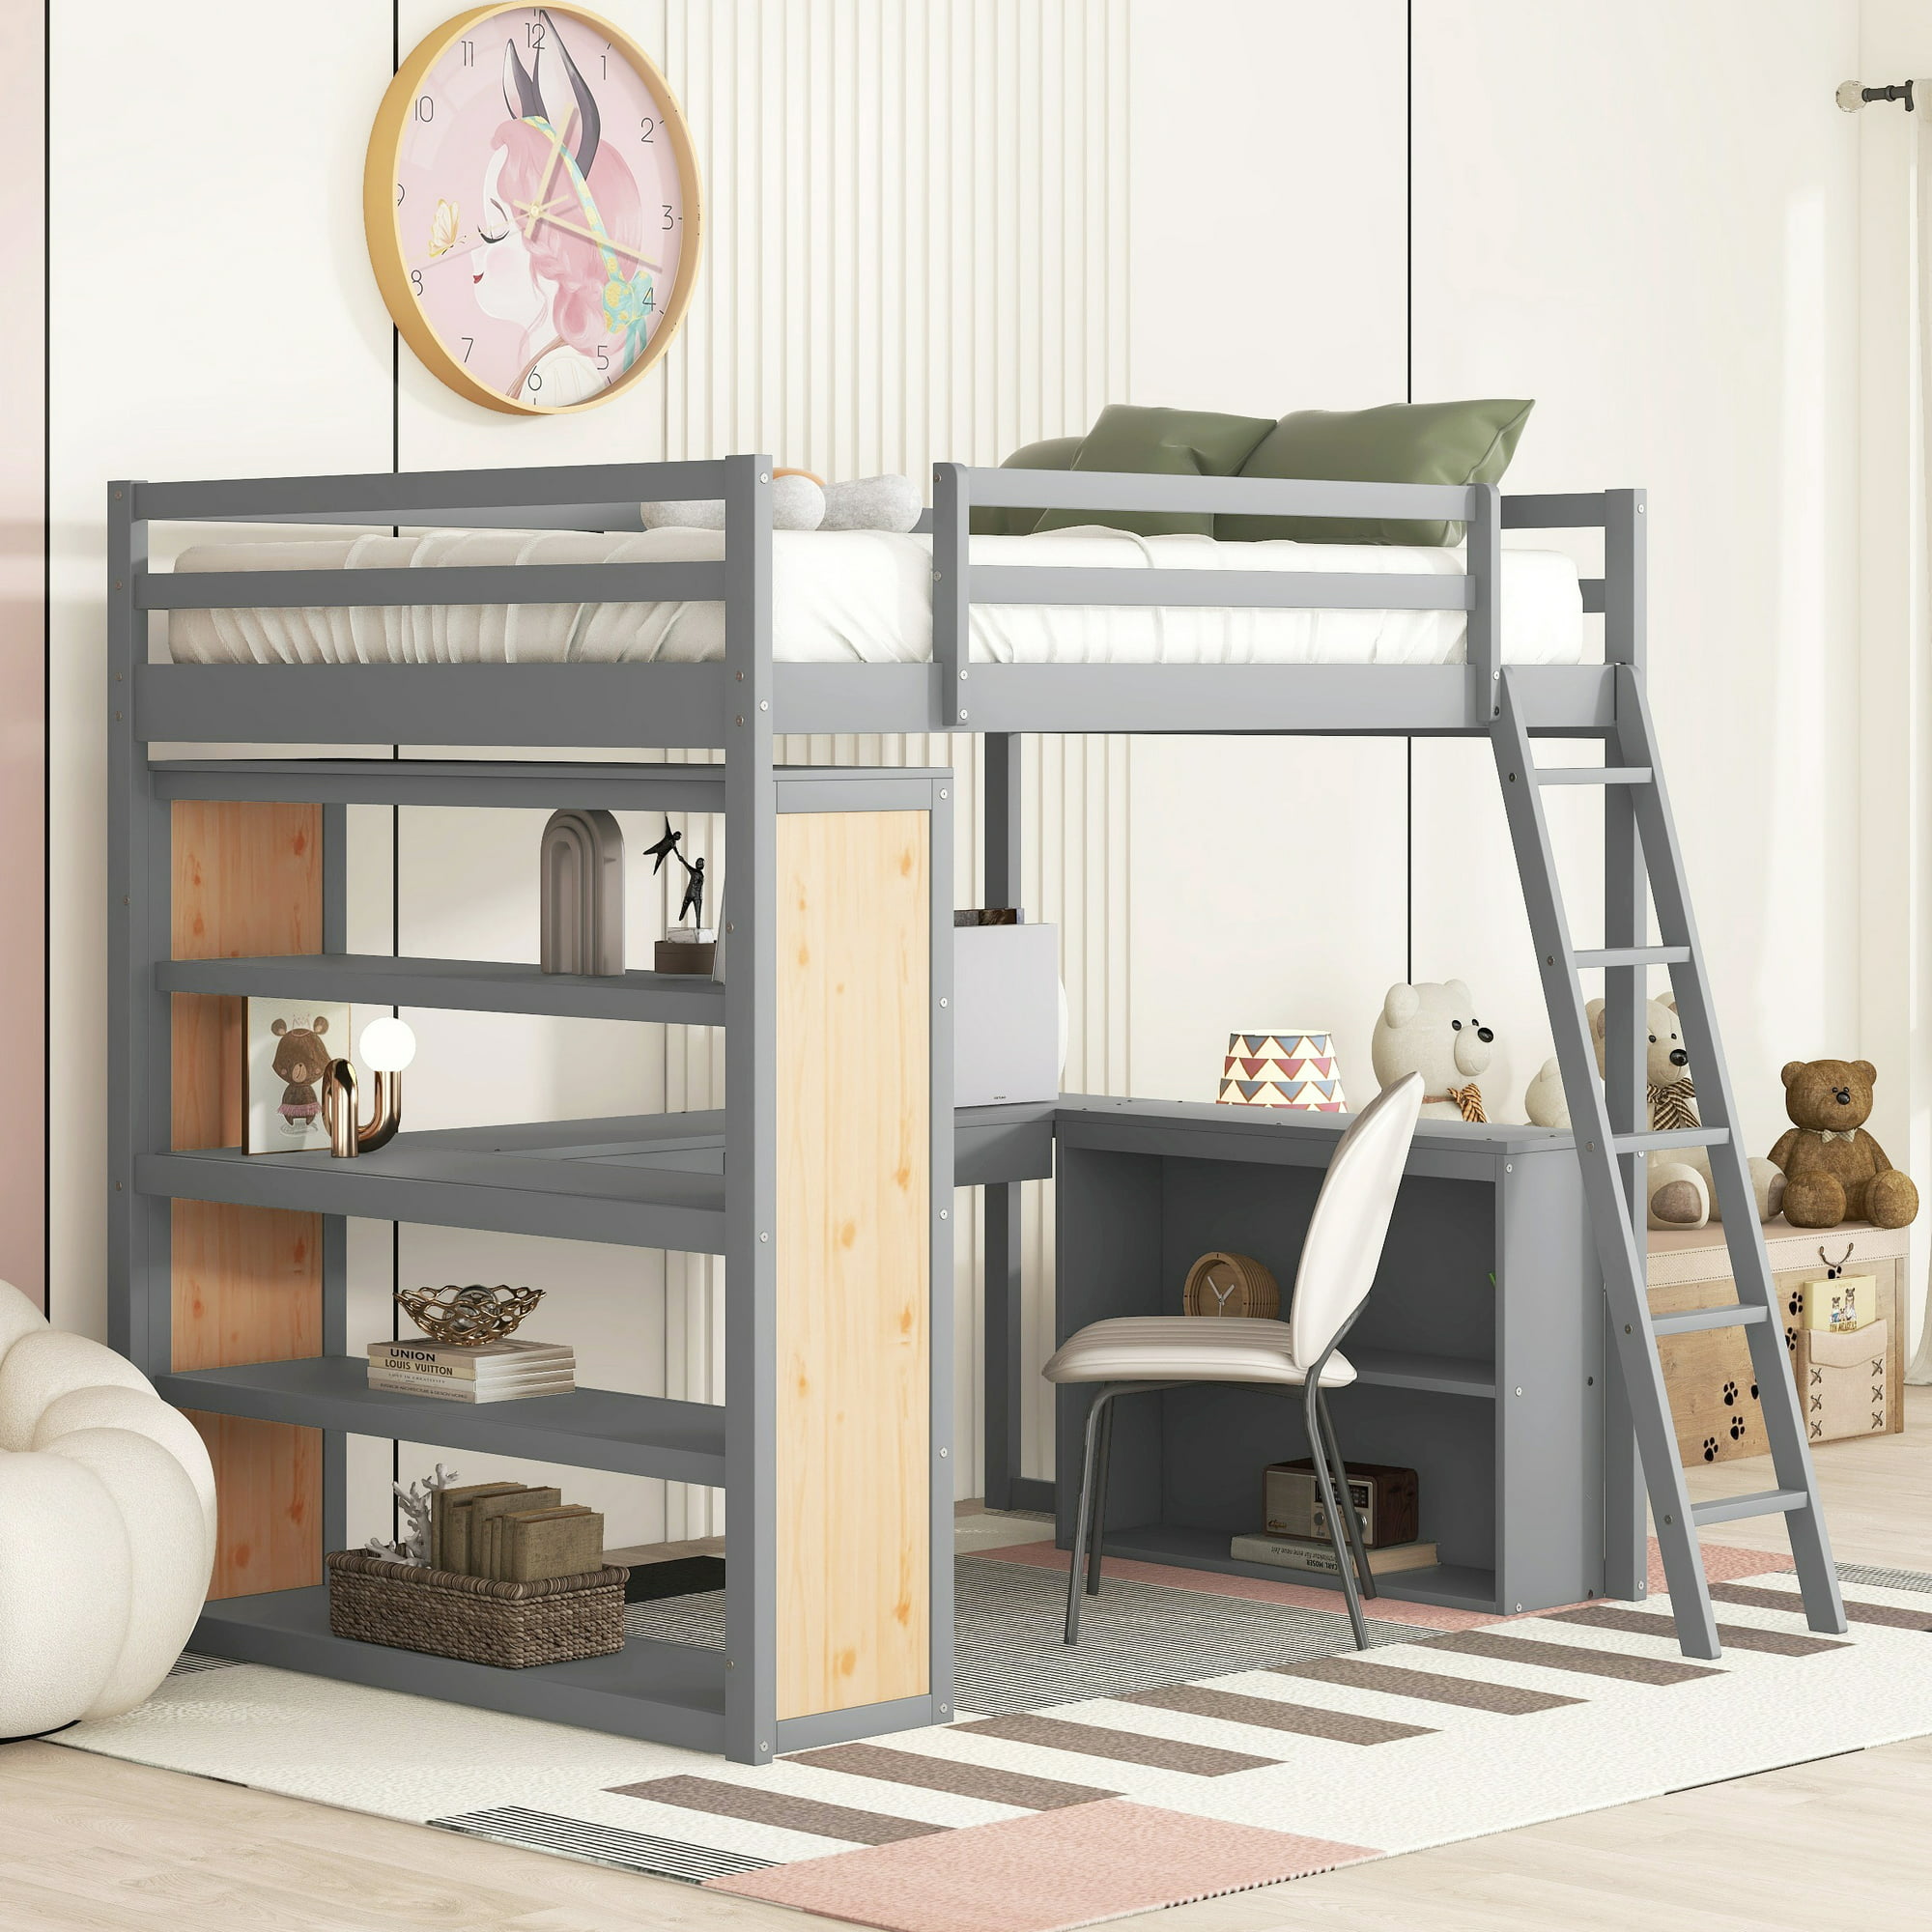 Bellemave Full Size Loft Bed with Desk and Shelves, Wood Loft Bed